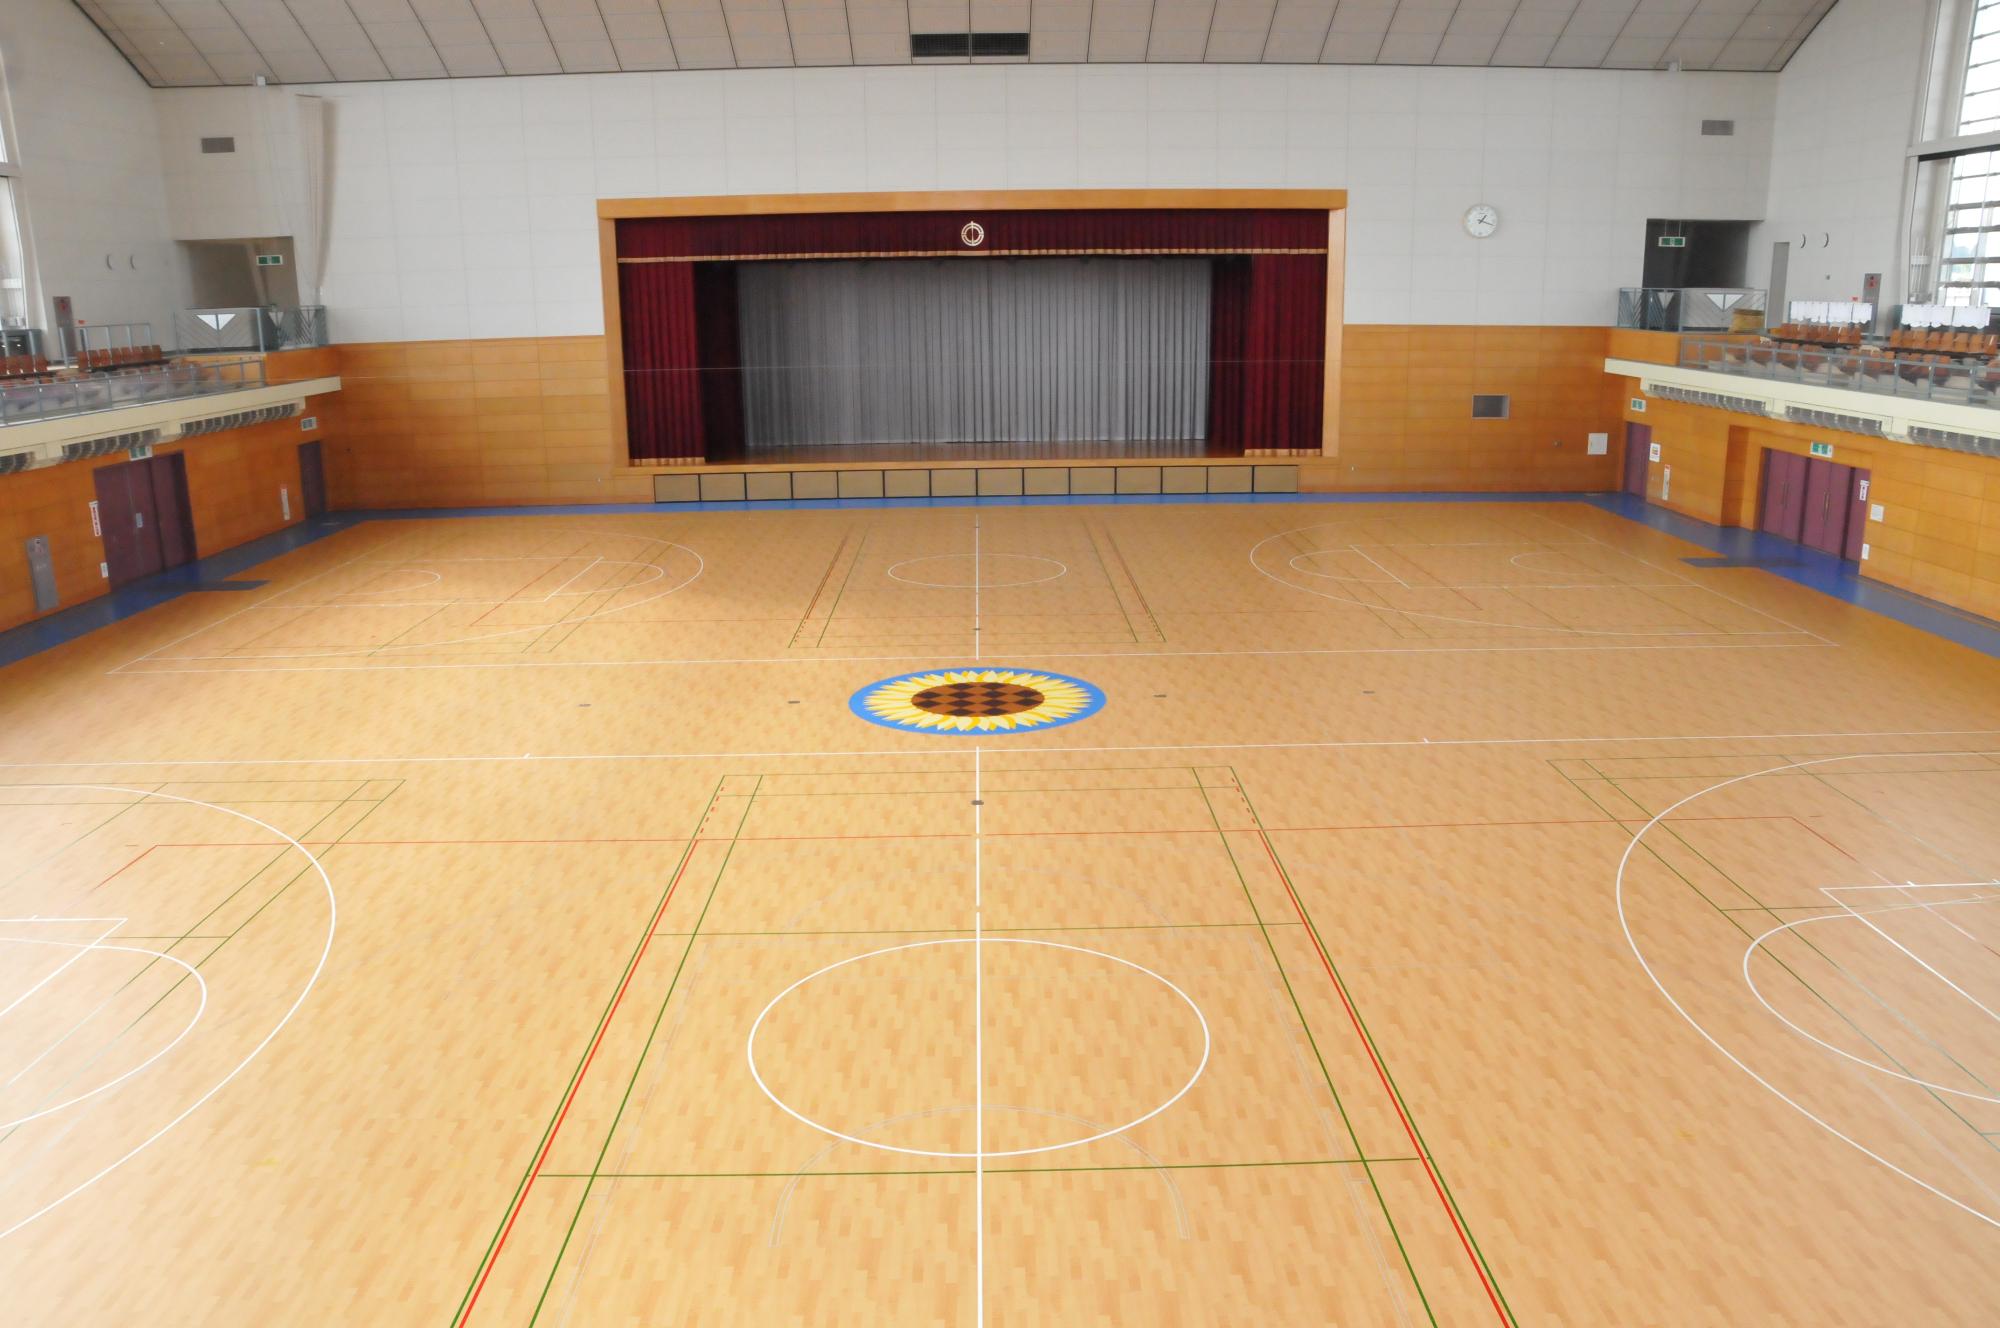 中央床にバスケットボールのコートが2面設置され、奥には深く赤い色の一文字幕や袖幕グレーの引幕の閉じたステージがあり、両側2階席に観客席が設けられている中山町体育館館内の写真